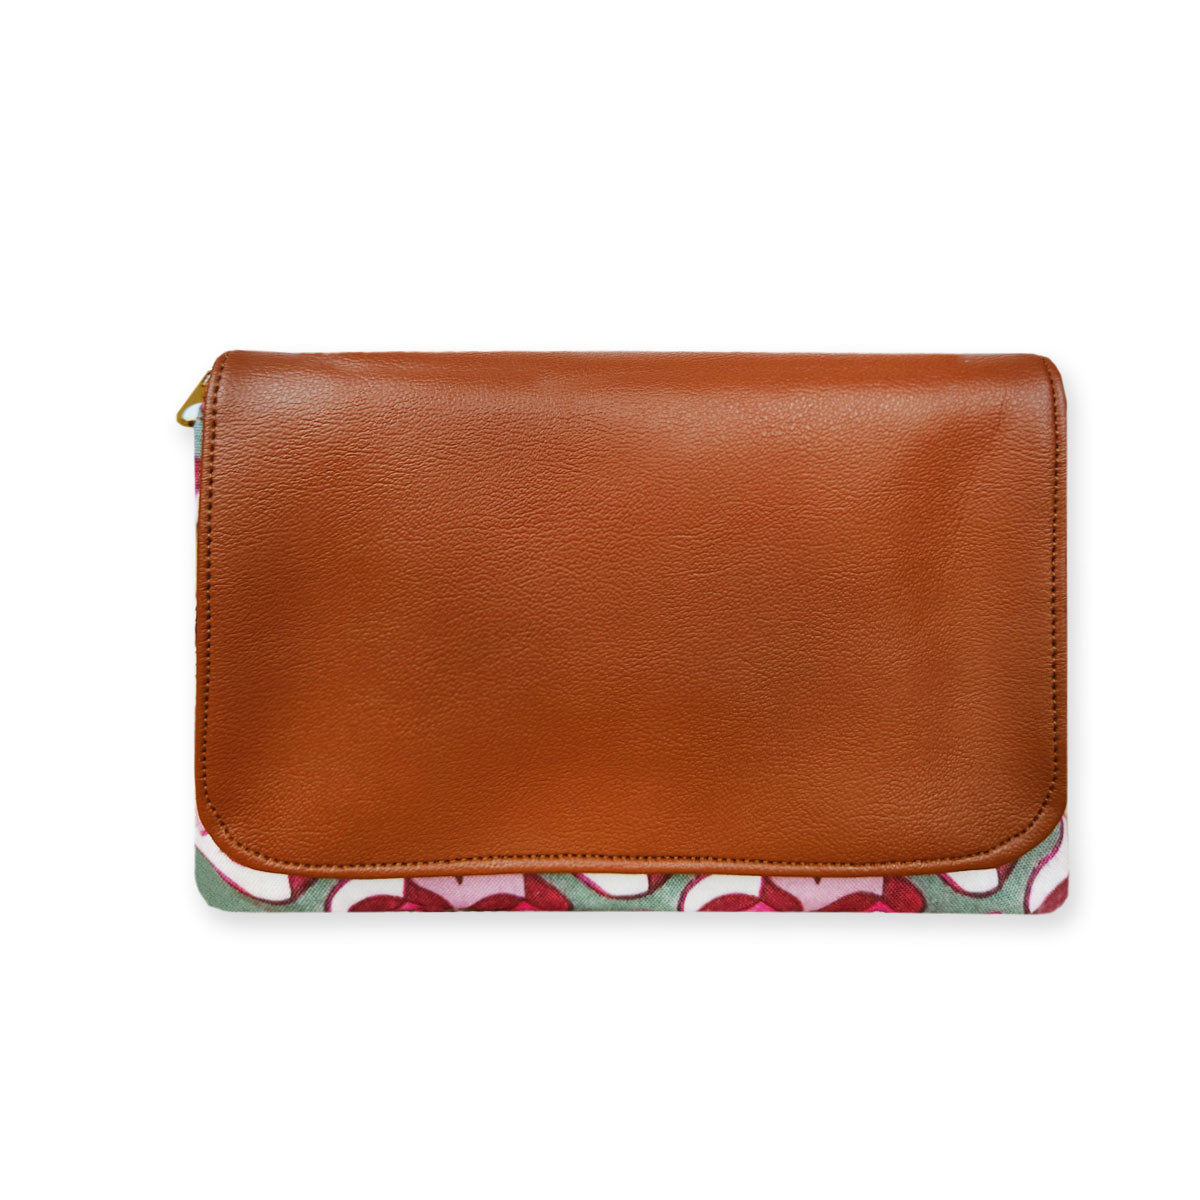 Kollam Pink Pinwheel Leather Wallet